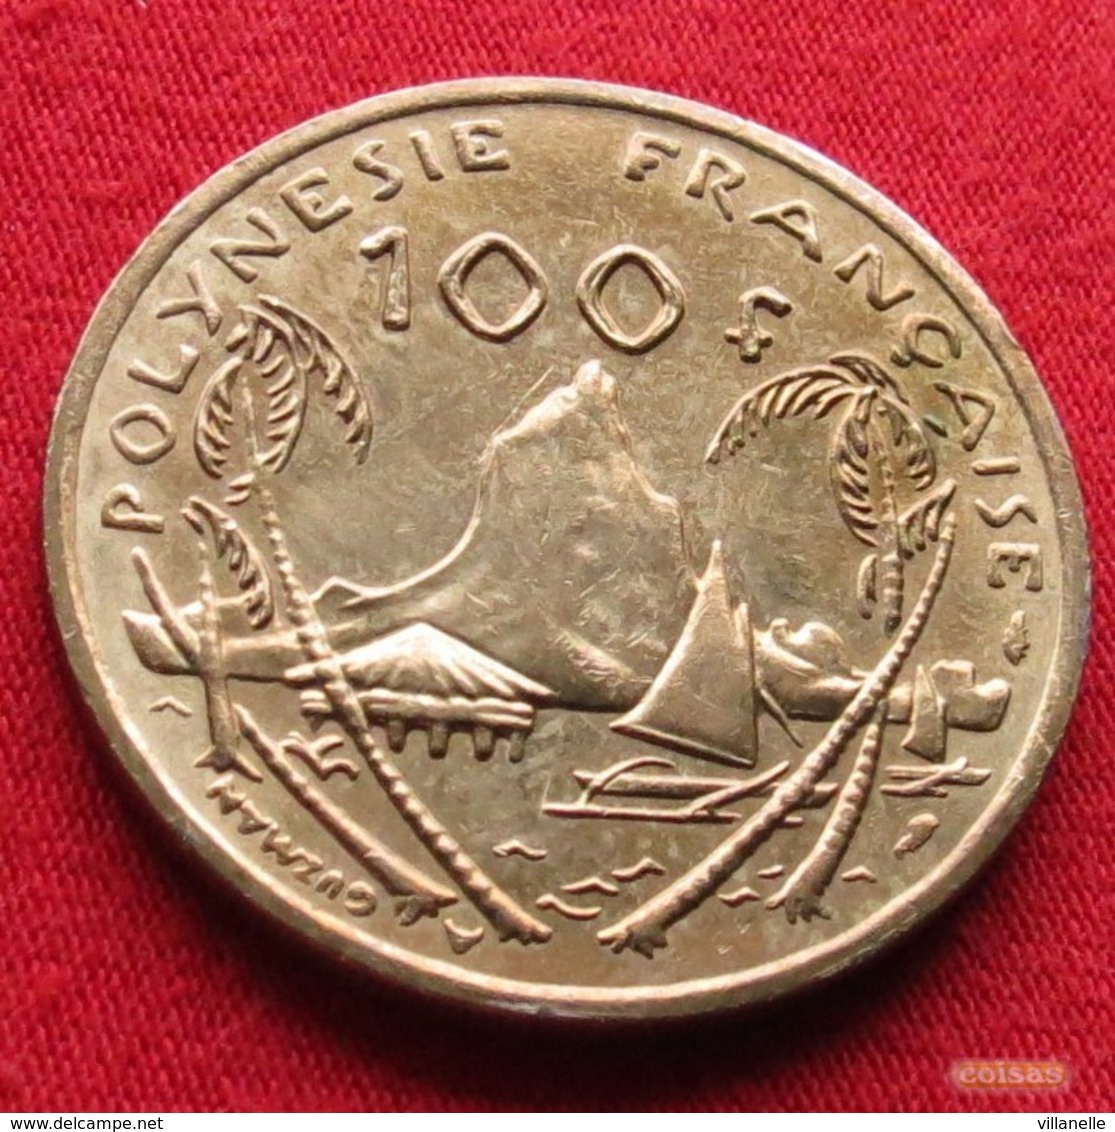 French Polynesia 100 Francs 1992 KM# 14 Polynesie Polinesia - French Polynesia